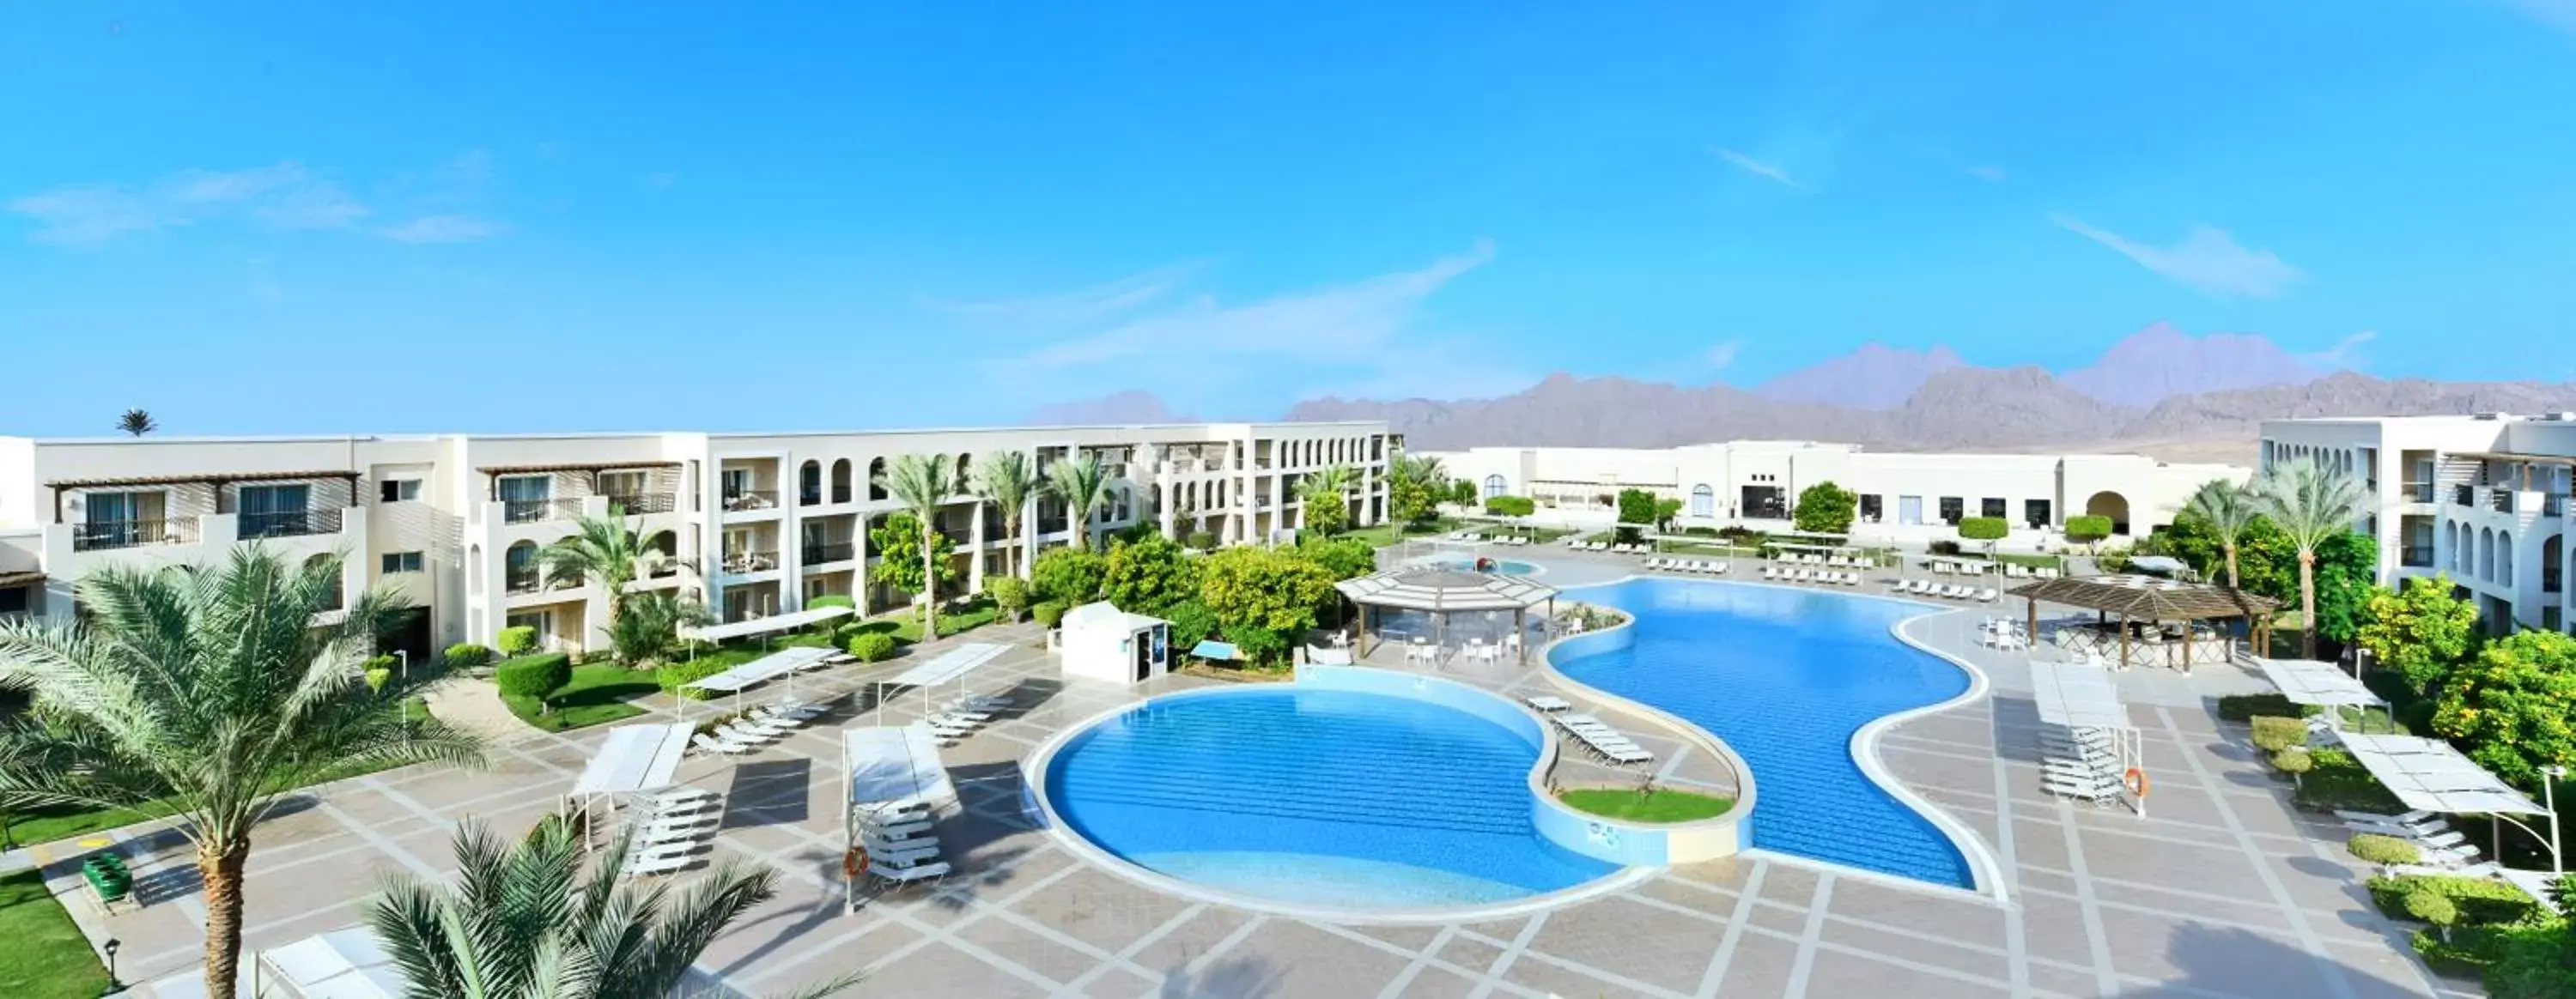 Pool View in Jaz Mirabel Resort